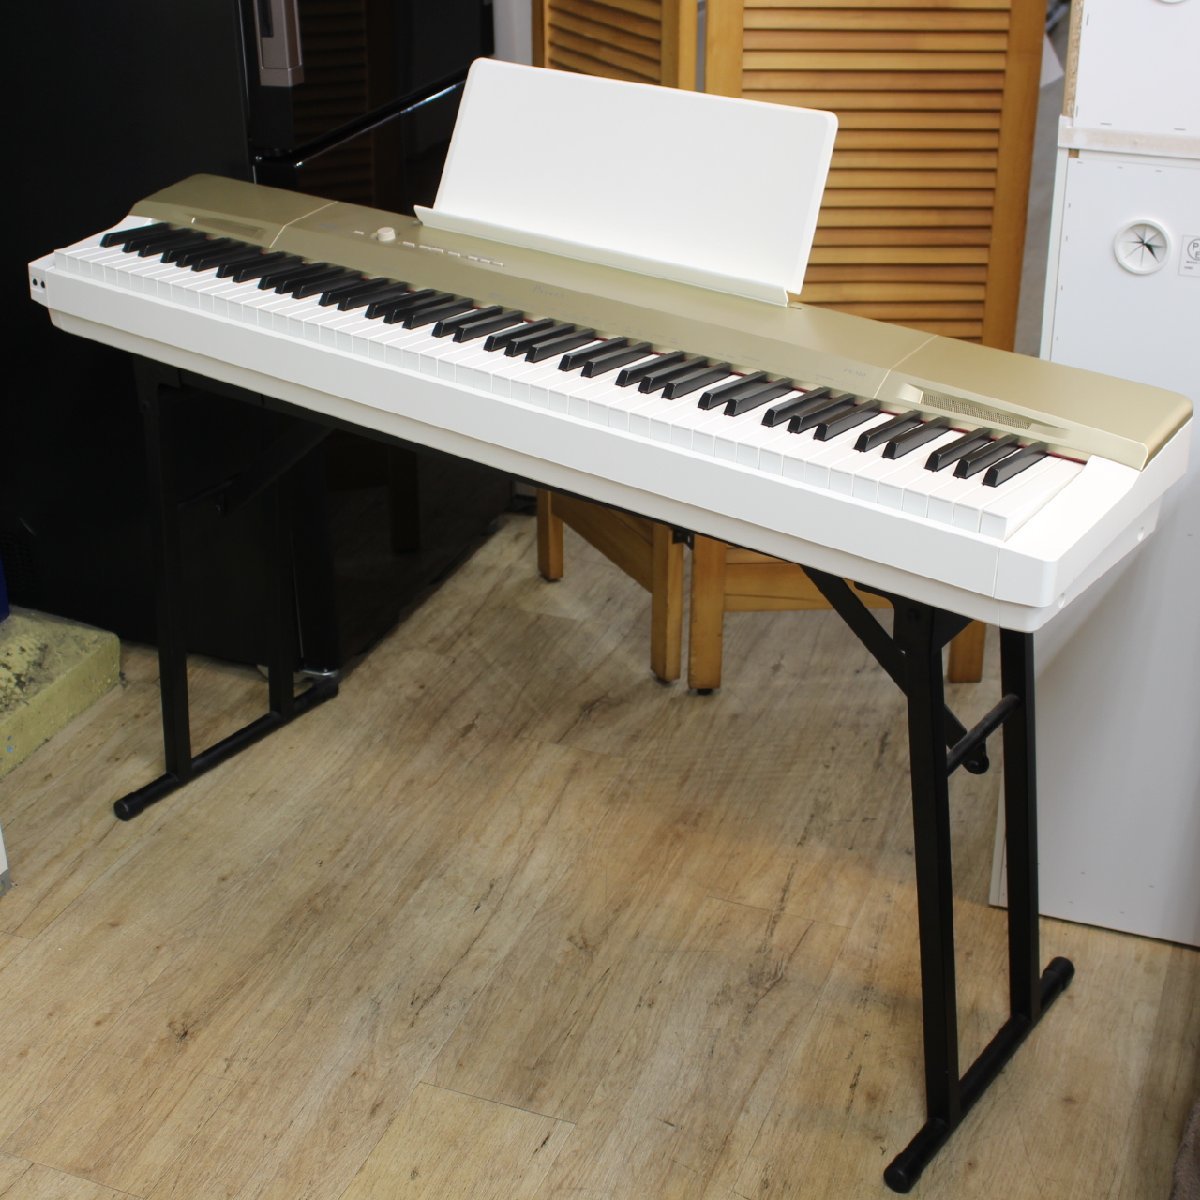 横浜市南区にて カシオ 電子ピアノ  プリヴィア Privia PX-160 2015年製 を出張買取させて頂きました。